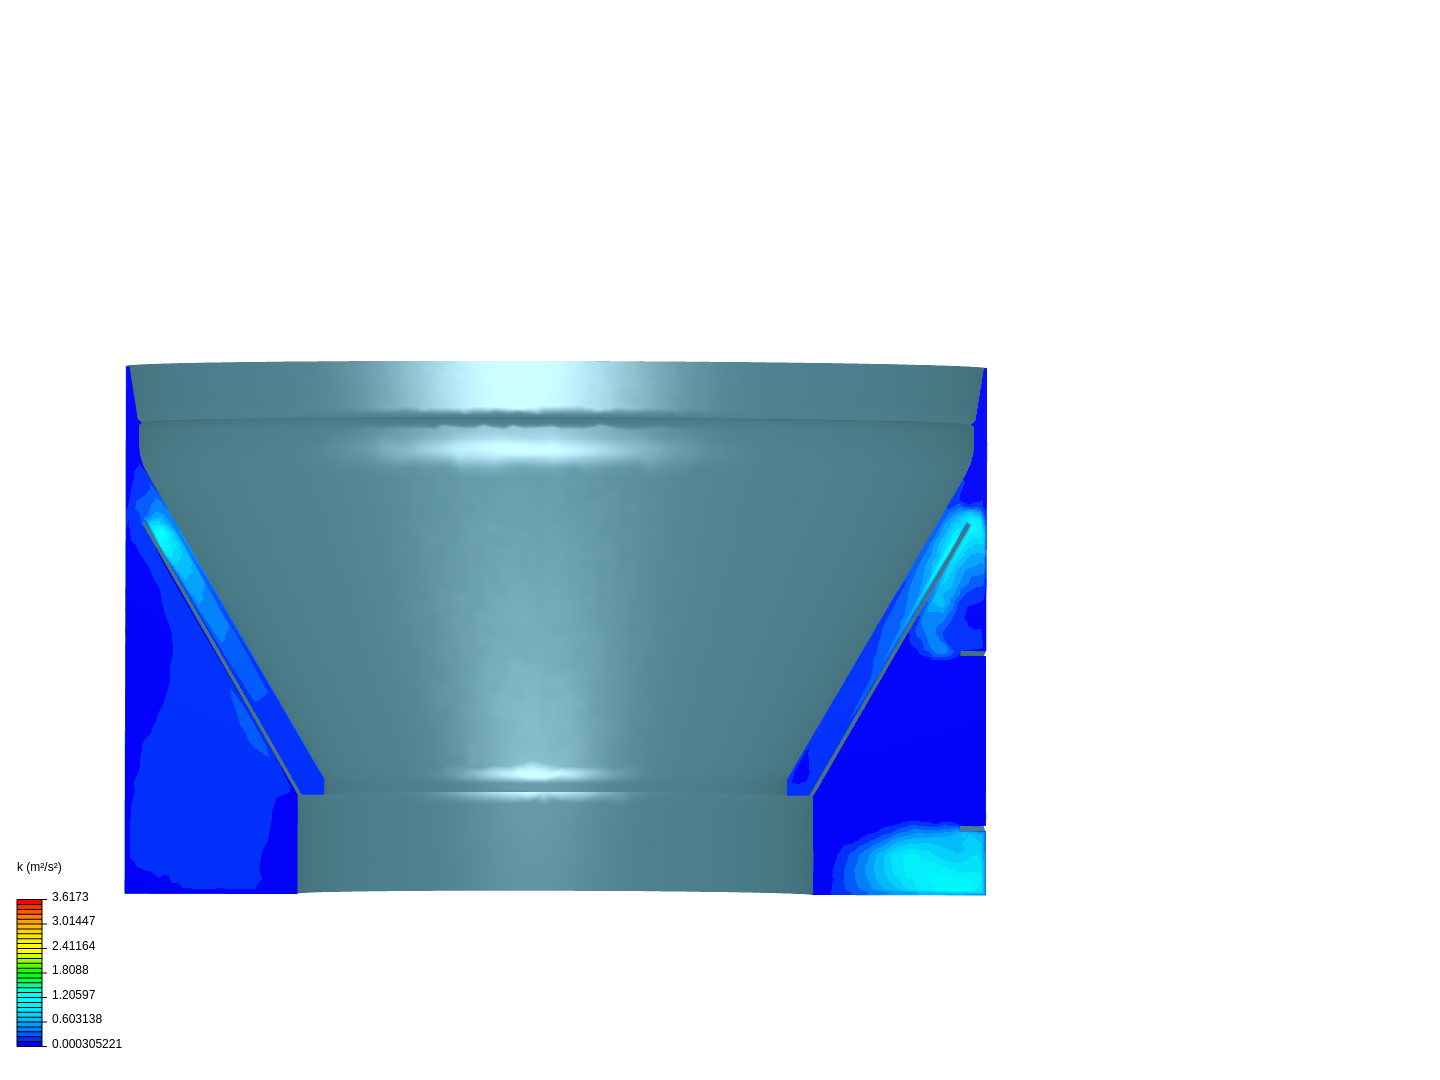 Original Cone flow image